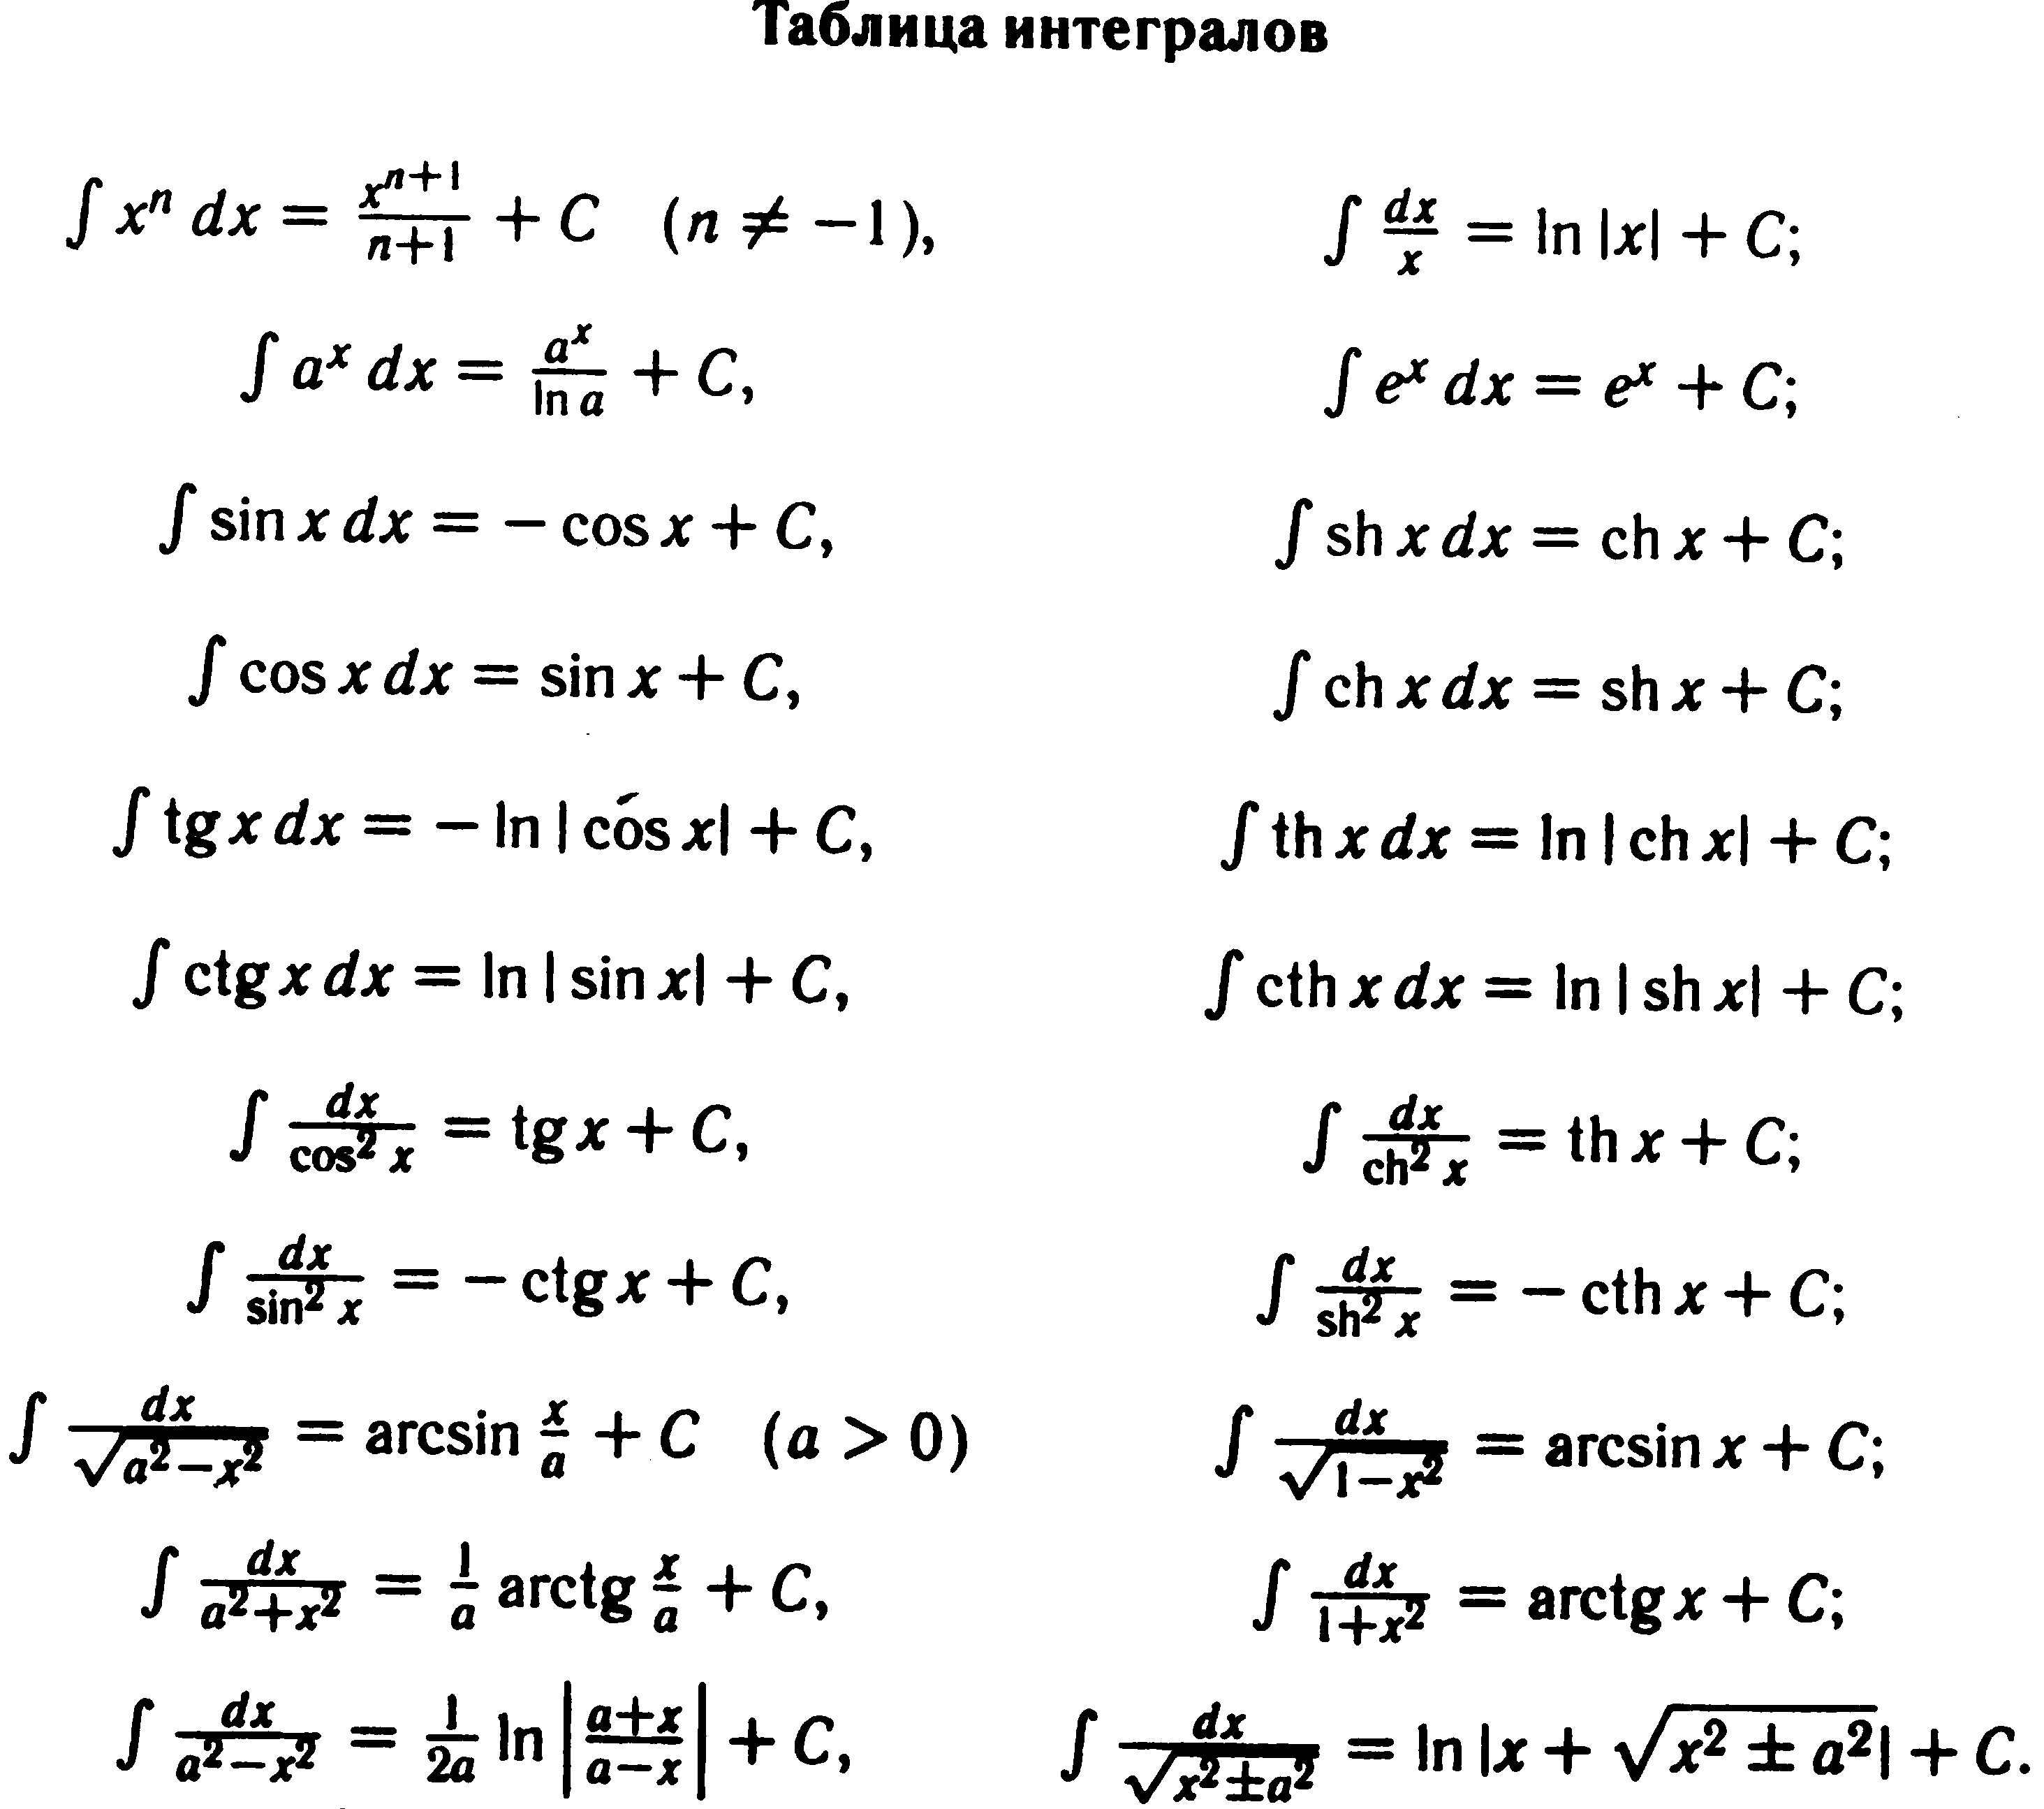 Интеграл таблица интегралов полная